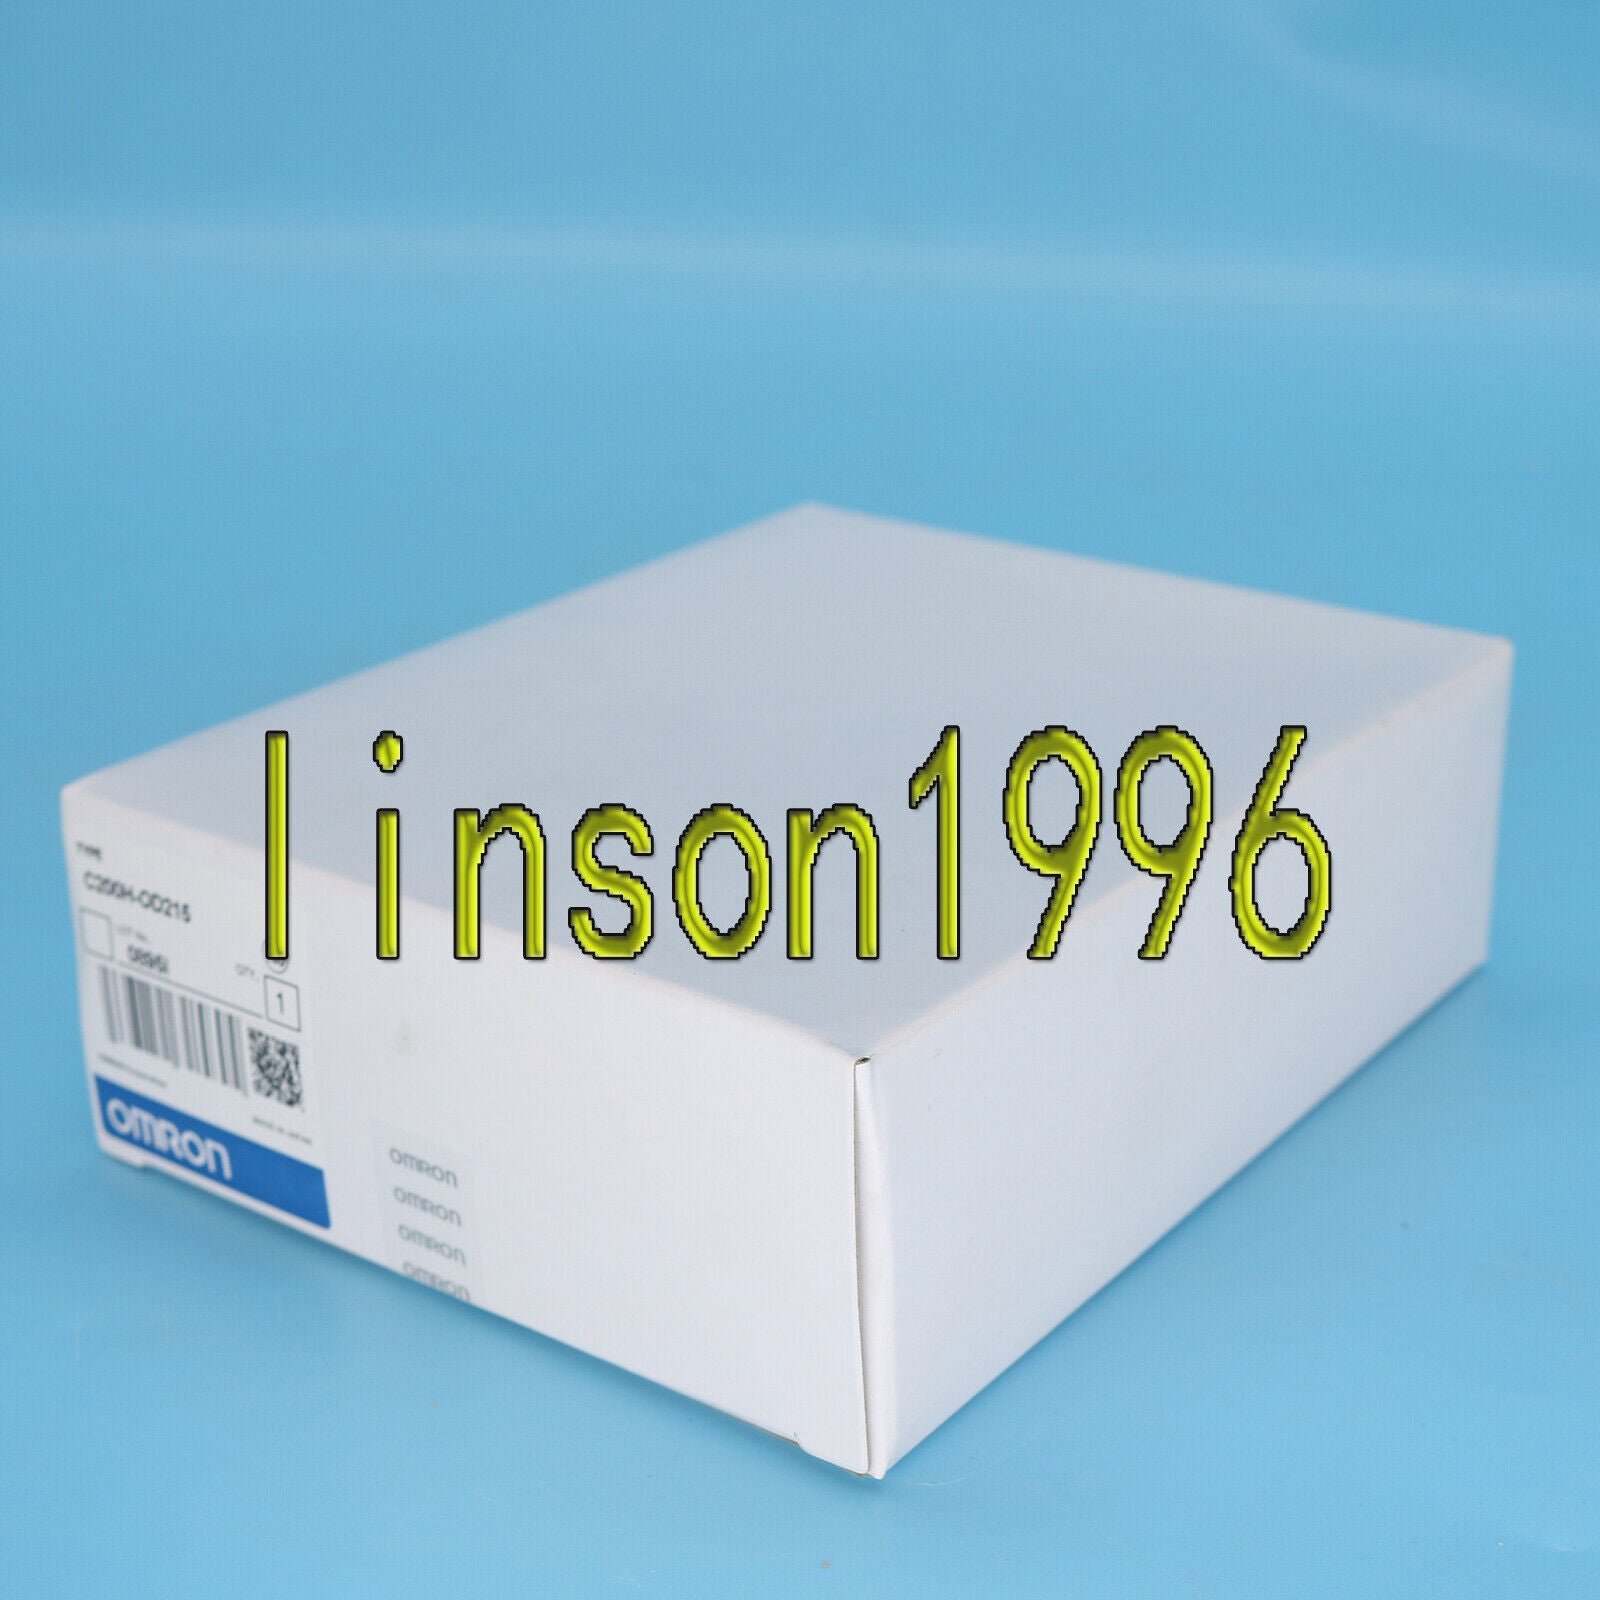 new  in box Omron ONE C200H-OD215 C200H OD215 PLC One year